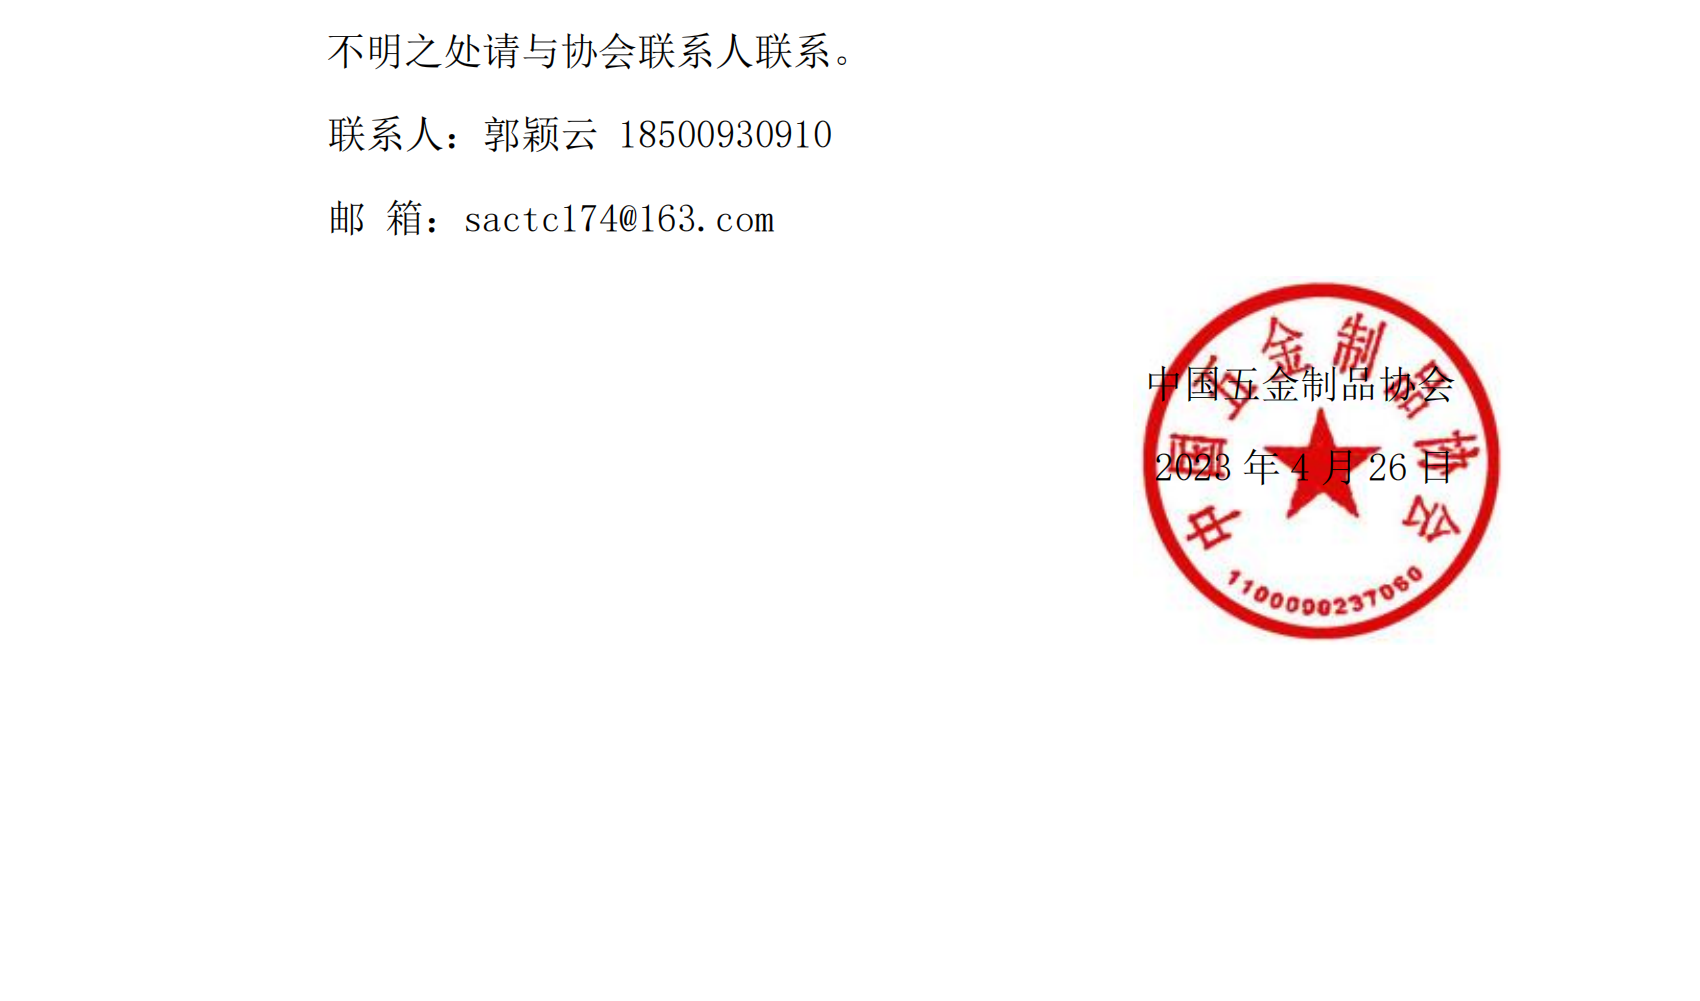 关于开展第五届中国质量奖申报工作的通知_01.png